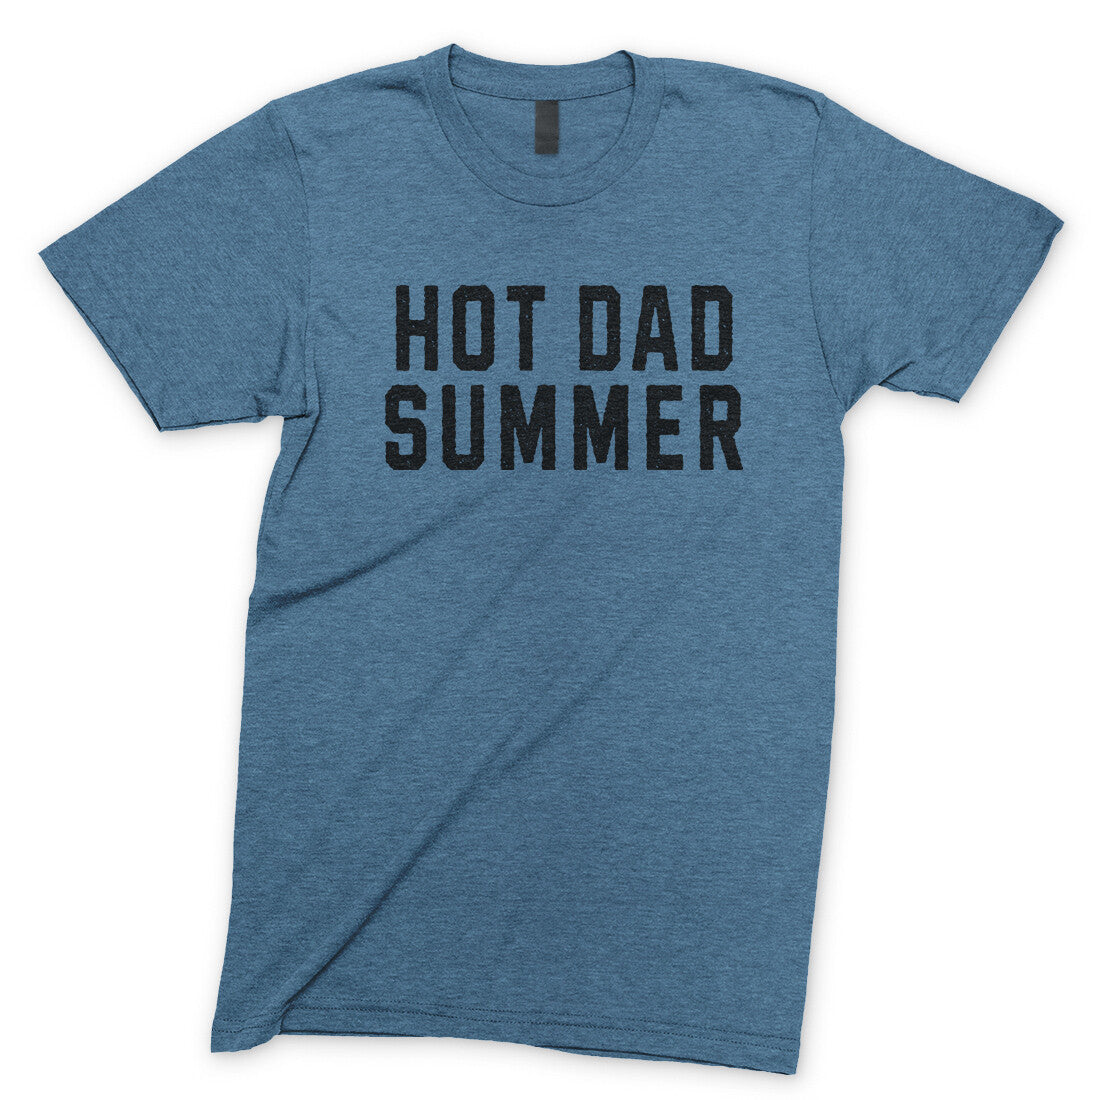 Hot Dad Summer in Heather Indigo Color